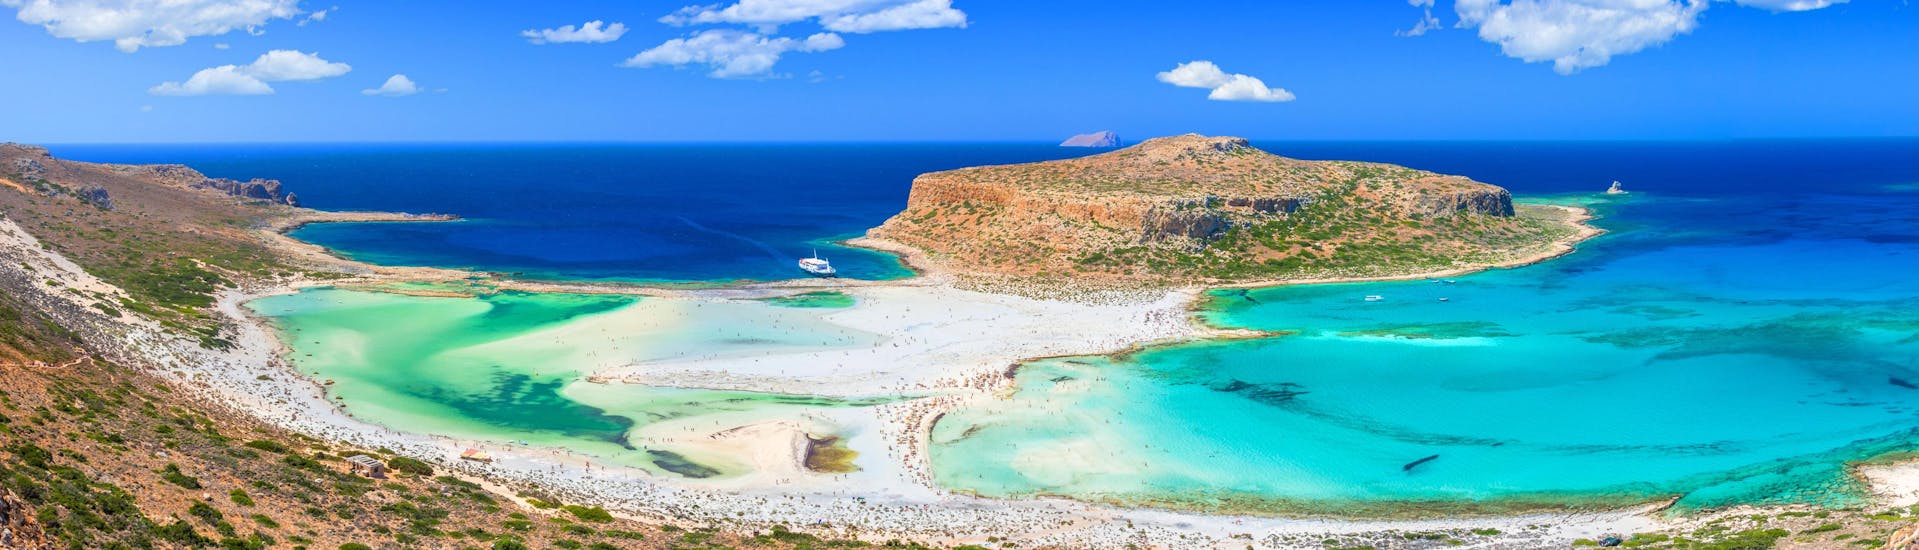 Bellissima spiaggia di Balos con l'isola di Gramvousa.